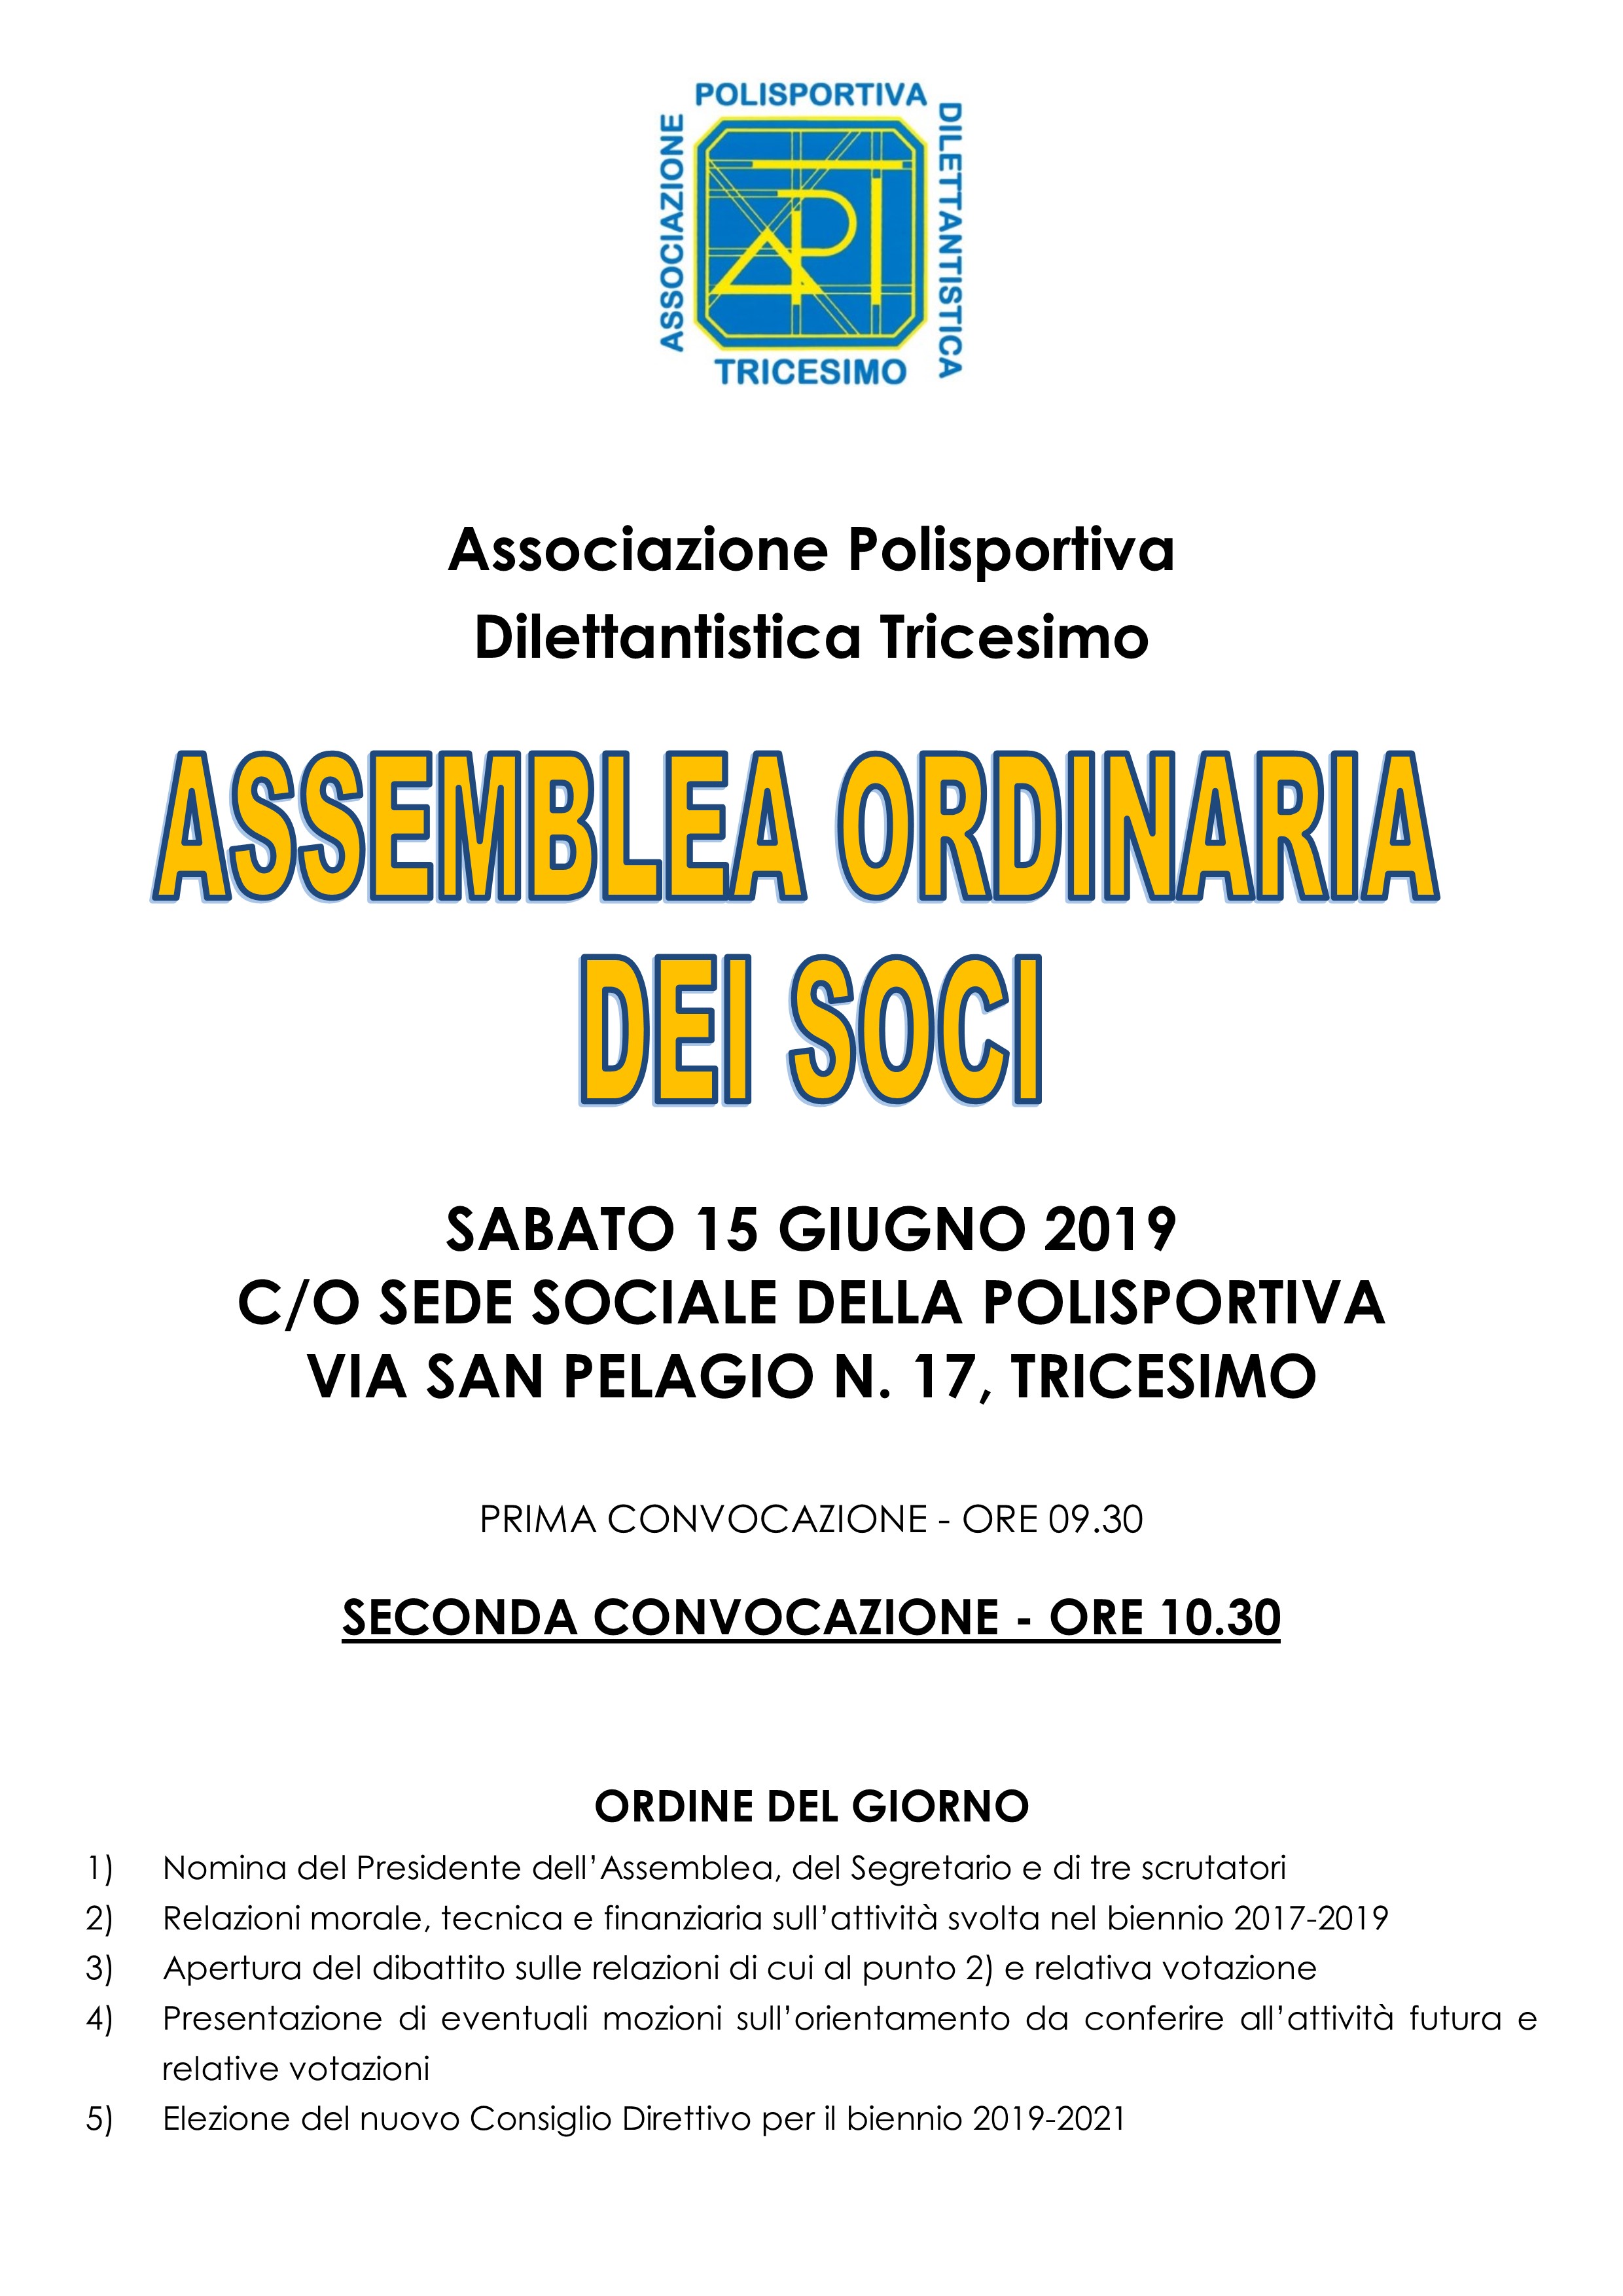 Assemblea ordinaria Polisportiva Tricesimo - 15 giugno 2019